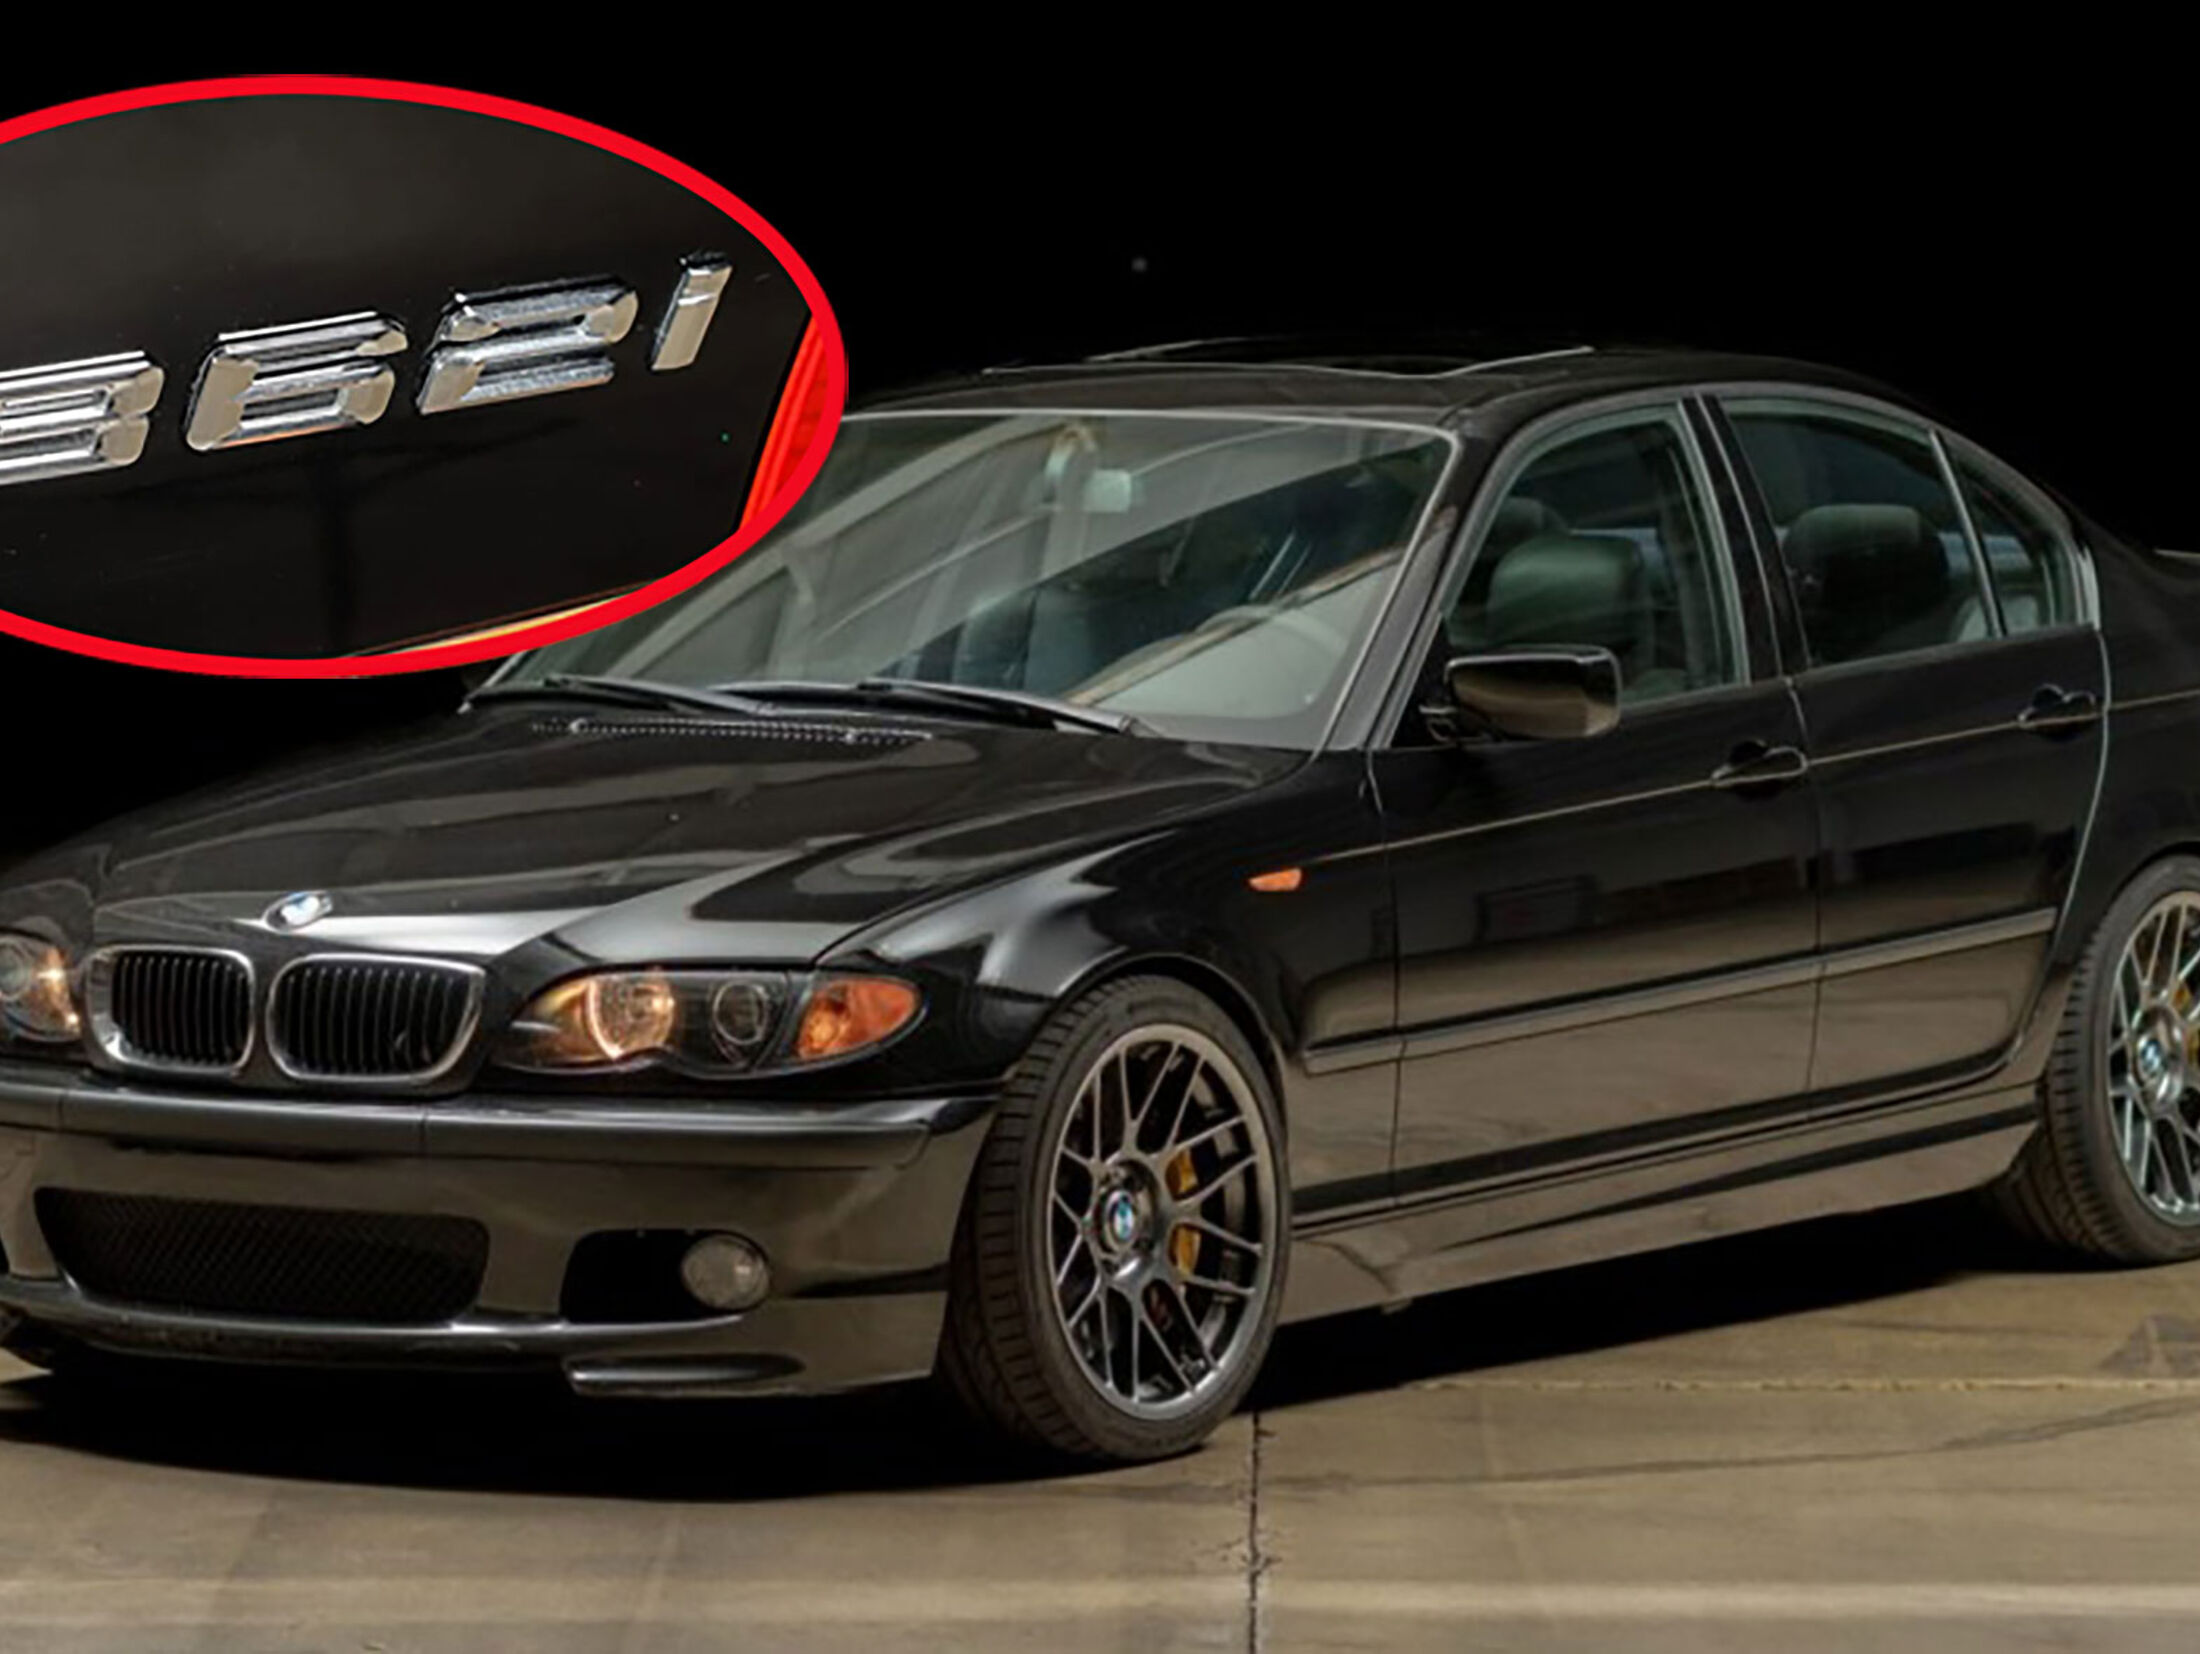 BMW 362i E46 zu verkaufen: Lockstoff bildet nur der Corvette-V8